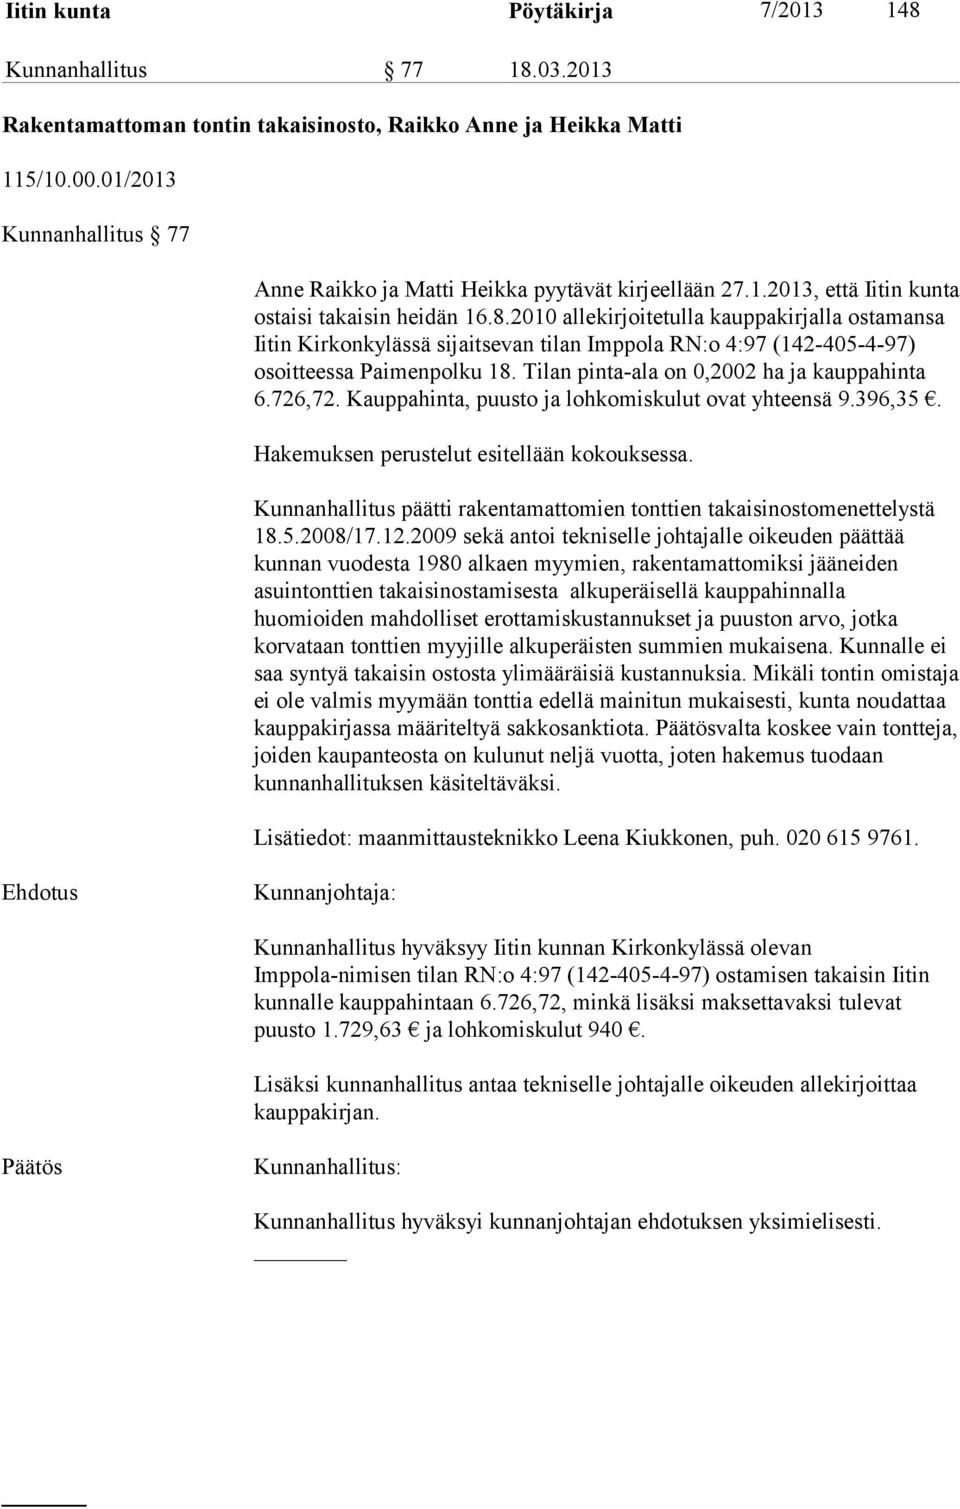 2010 allekirjoitetulla kauppakirjalla ostamansa Iitin Kirkonkylässä sijaitsevan tilan Imppola RN:o 4:97 (142-405-4-97) osoitteessa Paimenpolku 18. Tilan pinta-ala on 0,2002 ha ja kauppahinta 6.726,72.